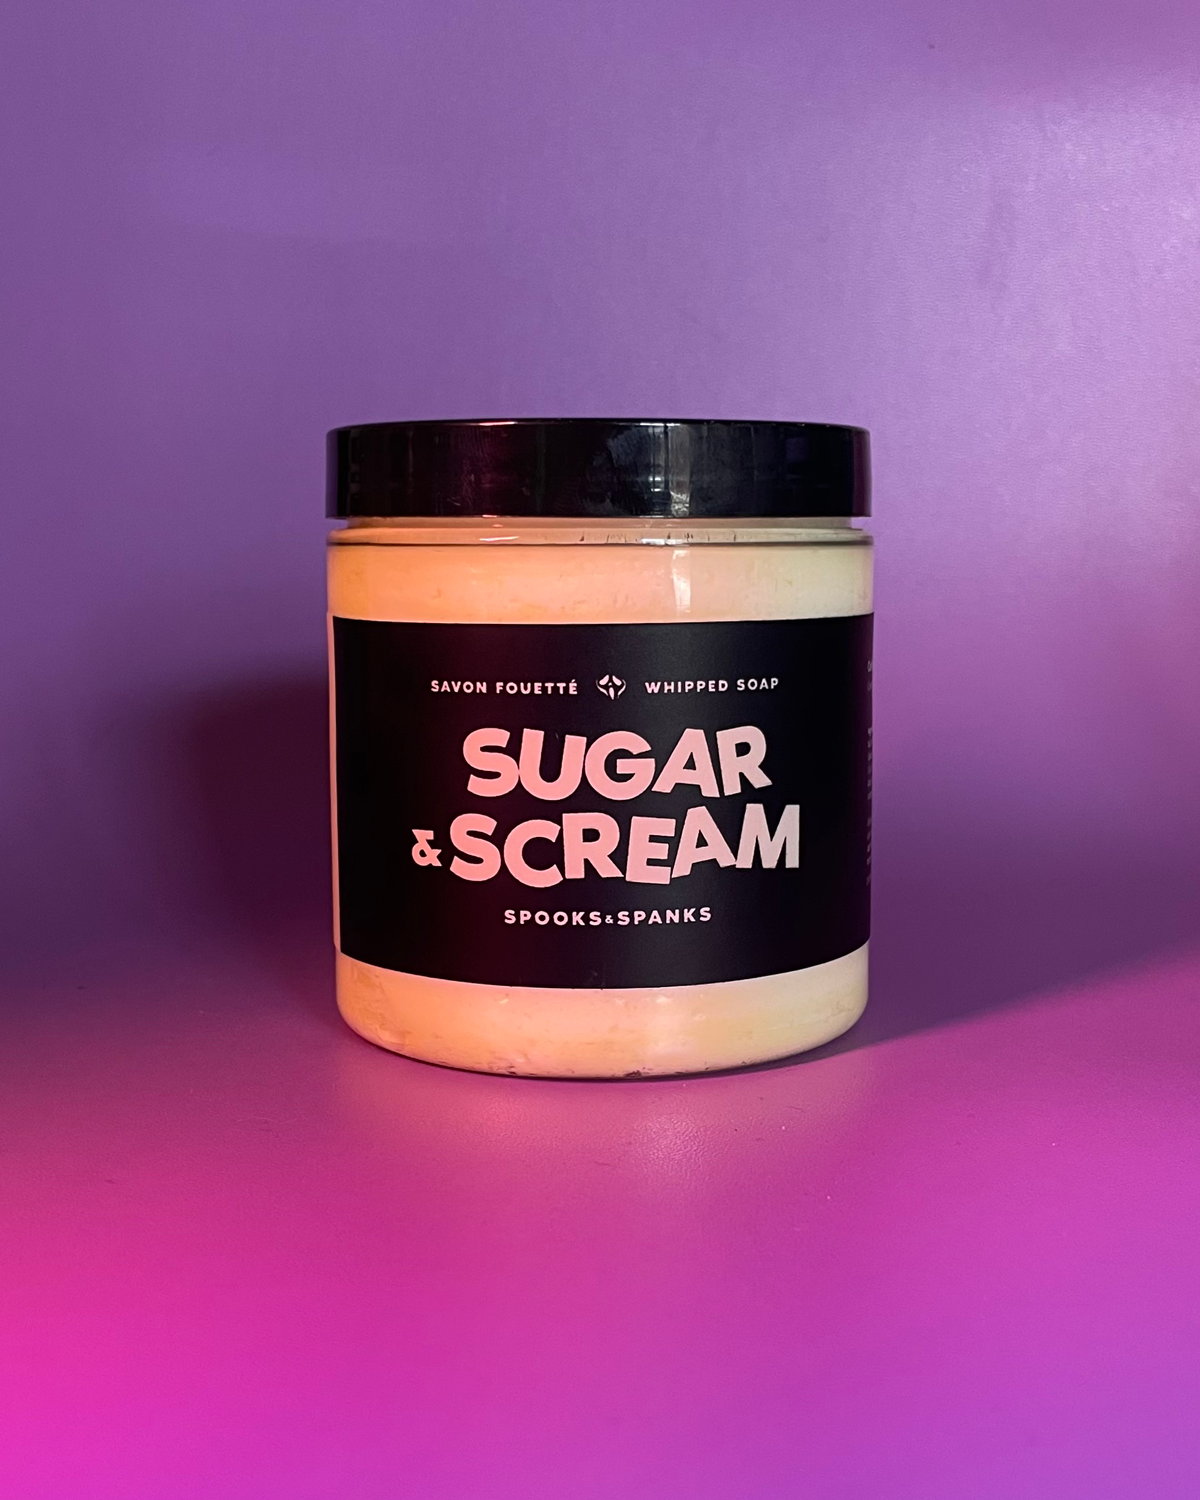 Savon fouetté Sugar & Scream café caramel